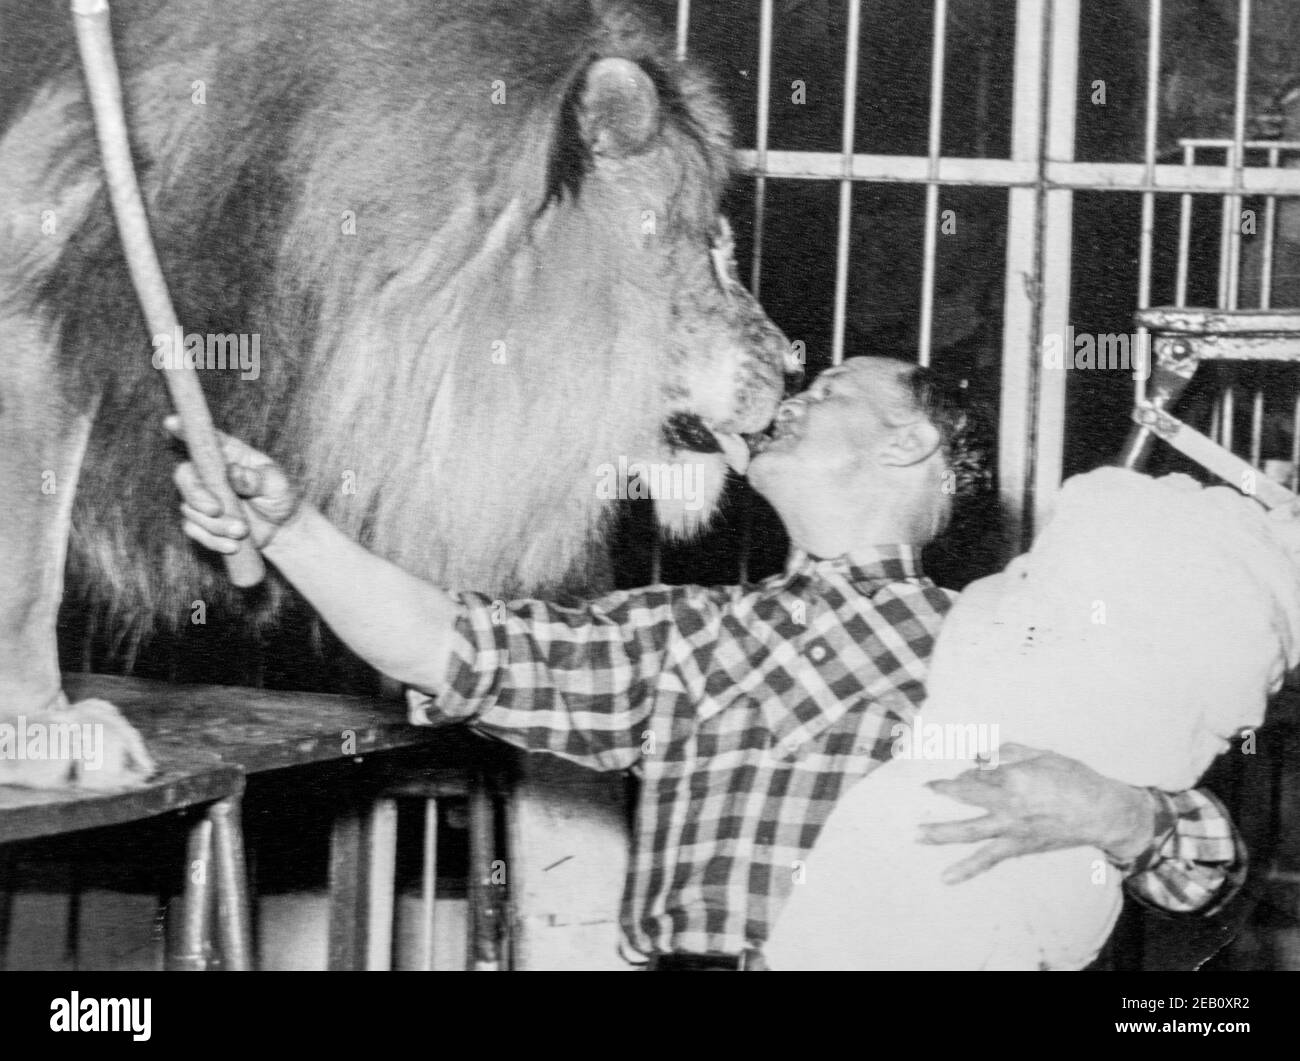 Photographie noire et blanche des années 1950 montrant un tamer de lion donnant le baiser de lion mâle de la mort avec bébé sur son bras, la tradition parmi les artistes de cirque Banque D'Images